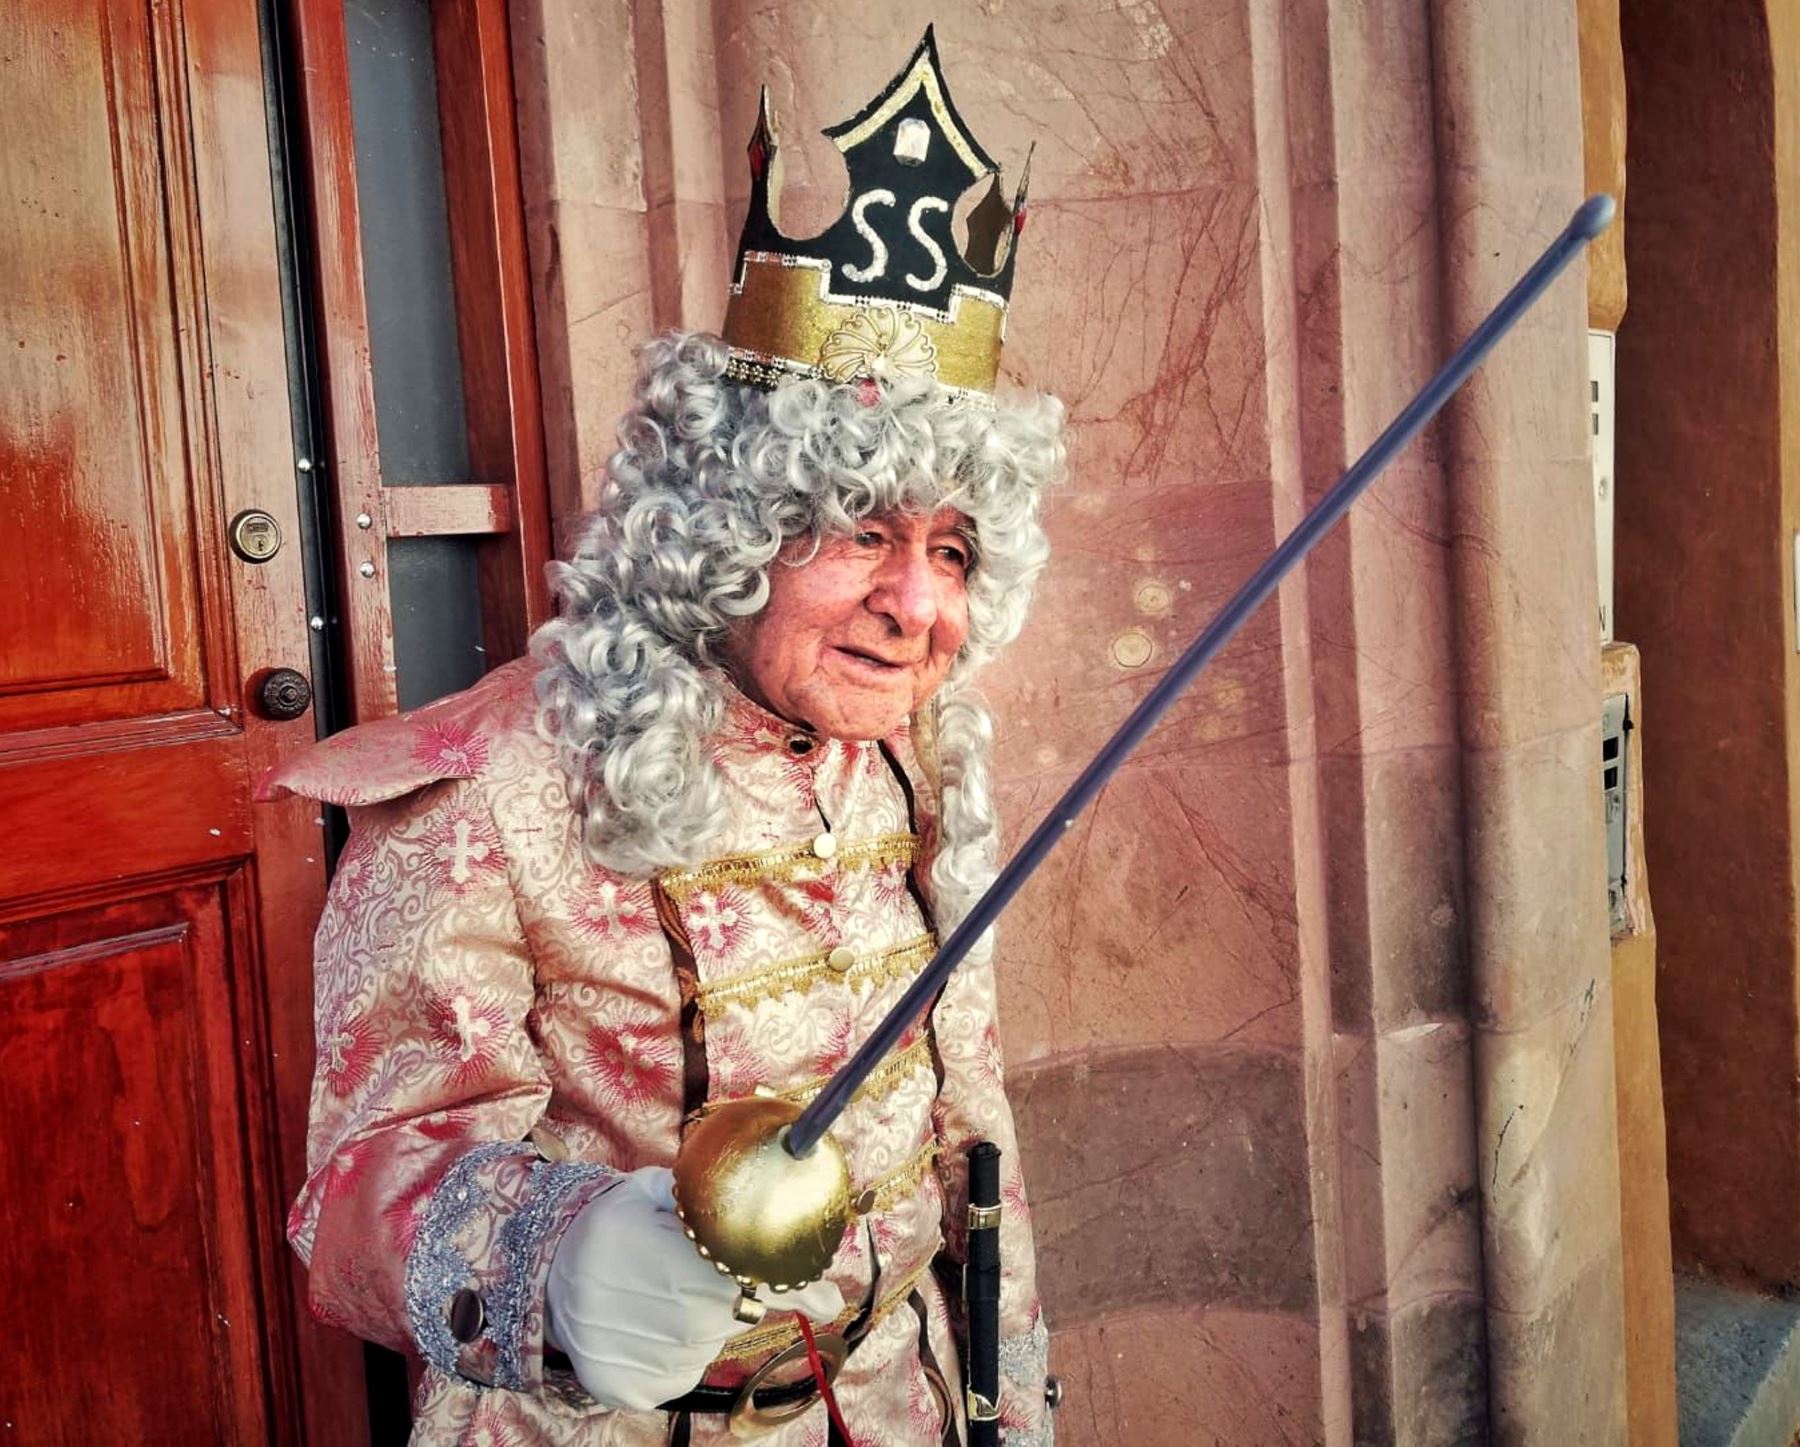 Con 92 años de edad, Segundo Alcalde es el protagonista de la fiesta del Carnaval de Cajamarca más longevo. A pesar de sus años desborda mucha alegría y entusiasmo. Foto: Eduard Lozano